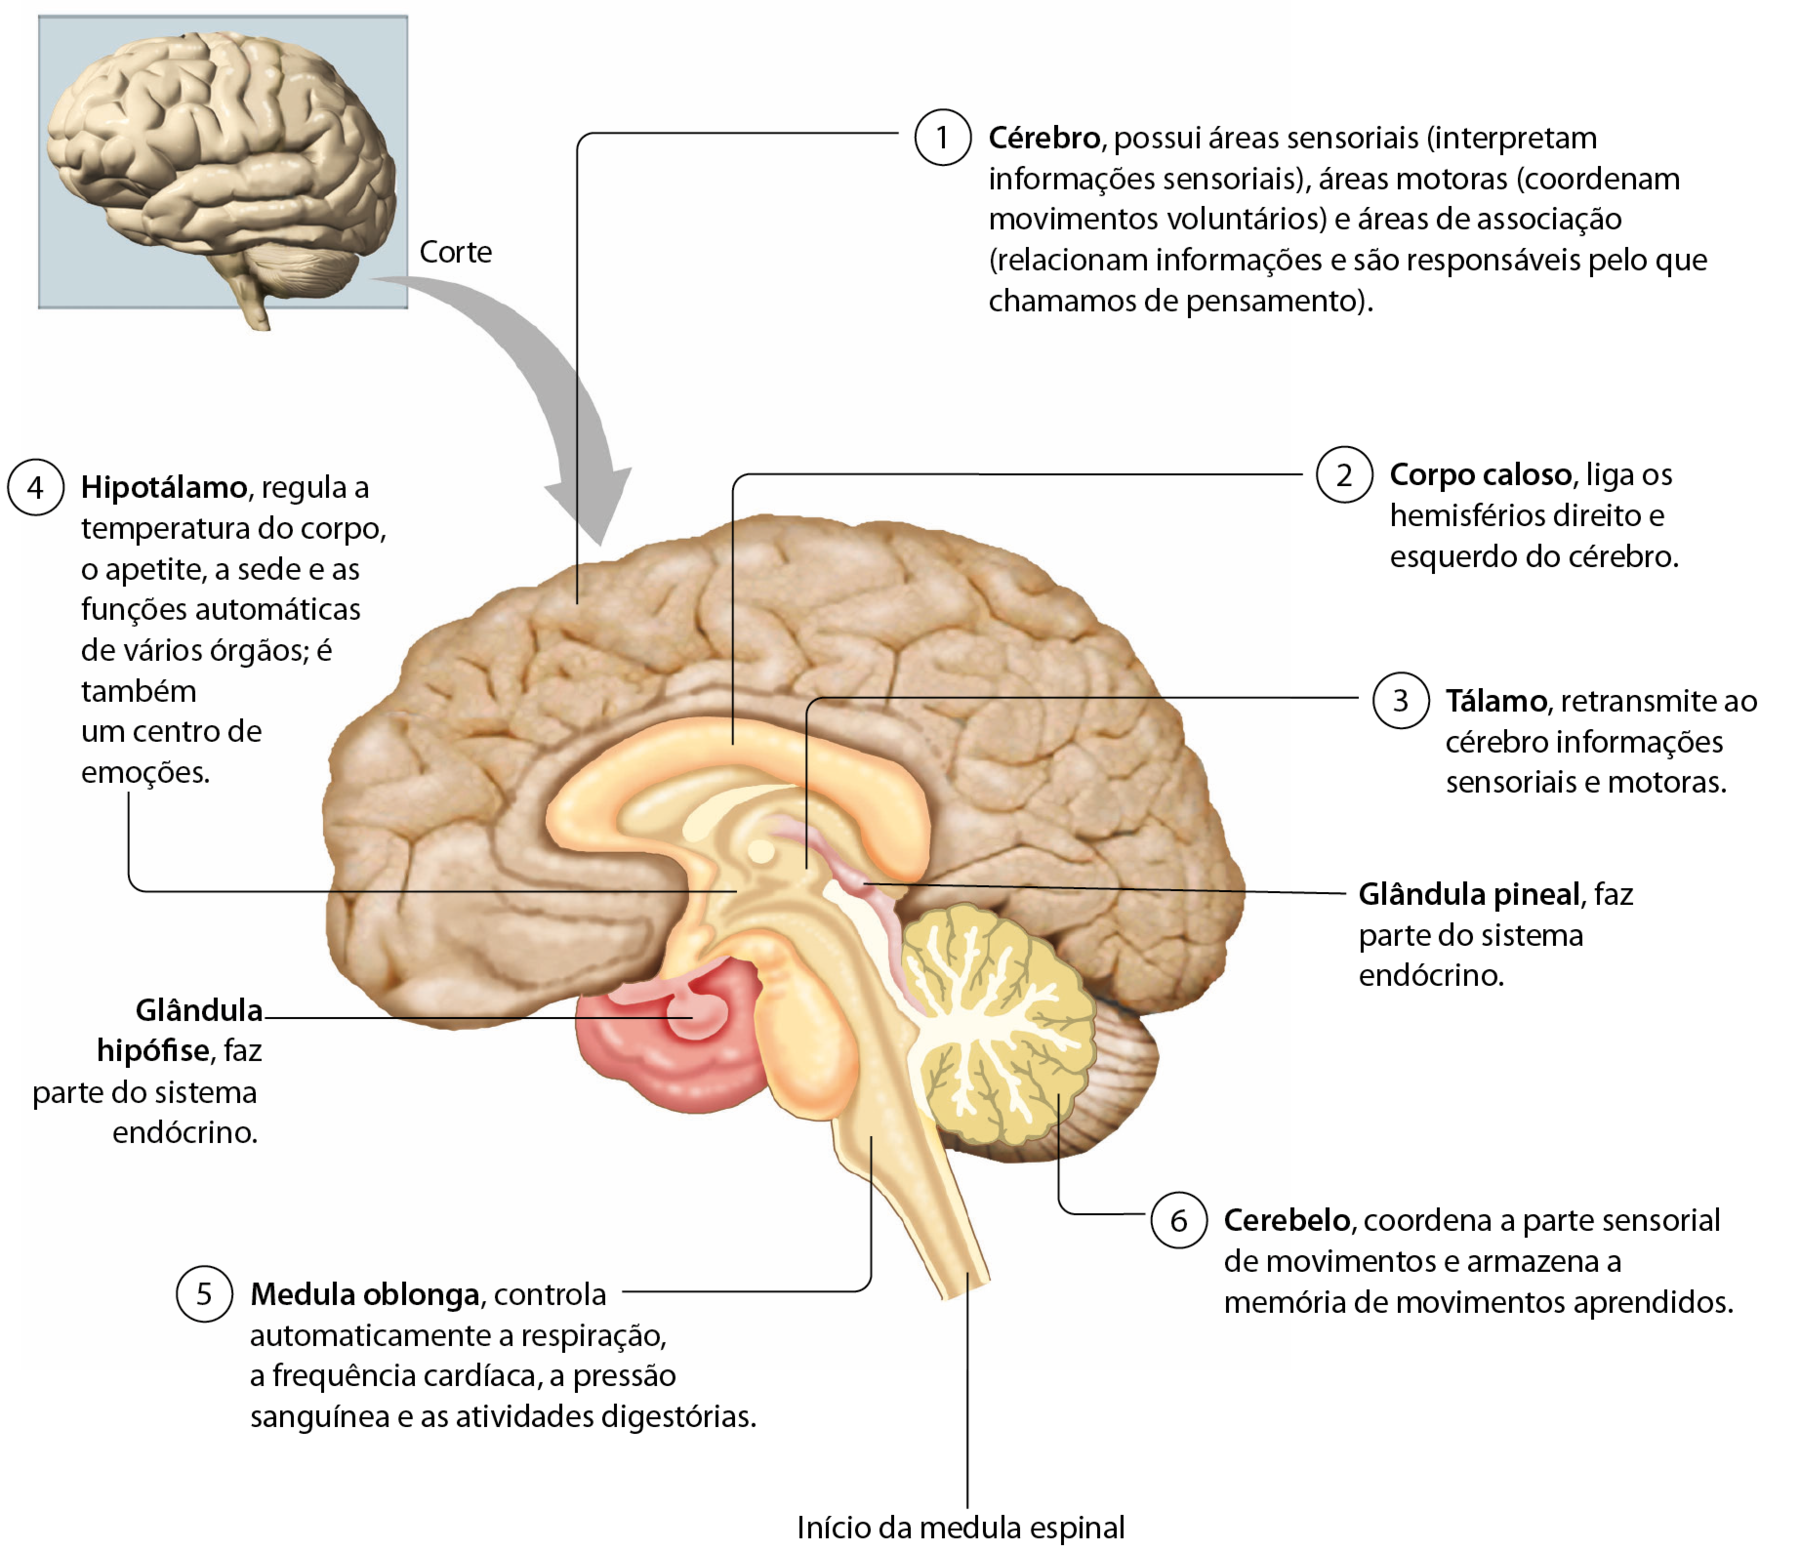 Esquema. Ilustração de um encéfalo. Seta para a direita, com corte mostrando sua estrutura interna de perfil e com linhas de chamada para seus componentes. 1: Cérebro (em marrom), possui áreas sensoriais (interpretam informações sensoriais), áreas motoras (coordenam movimentos voluntários) e áreas de associação (relacionam informações e são responsáveis pelo que chamamos de pensamento). 2: Corpo caloso (em laranja), liga os hemisférios direito e esquerdo do cérebro. 3: Tálamo (em bege), retransmite ao cérebro informações sensoriais e motoras. 4: Hipotálamo, regula a temperatura do corpo, o apetite, a sede e as funções automáticas de vários órgãos; é também um centro de emoções. 5: Medula oblonga (em bege), controla automaticamente a respiração, a frequência cardíaca, a pressão sanguínea e as atividades digestórias. Na parte inferior, início da medula espinal (em bege). 6: Cerebelo (em verde), coordena a parte sensorial de movimentos e armazena a memória de movimentos aprendidos. No centro: glândula pineal (em lilás), faz parte do sistema endócrino. Abaixo do cérebro em frente à porção inferior do corpo caloso: glândula hipófise (em rosa), faz parte do sistema endócrino.